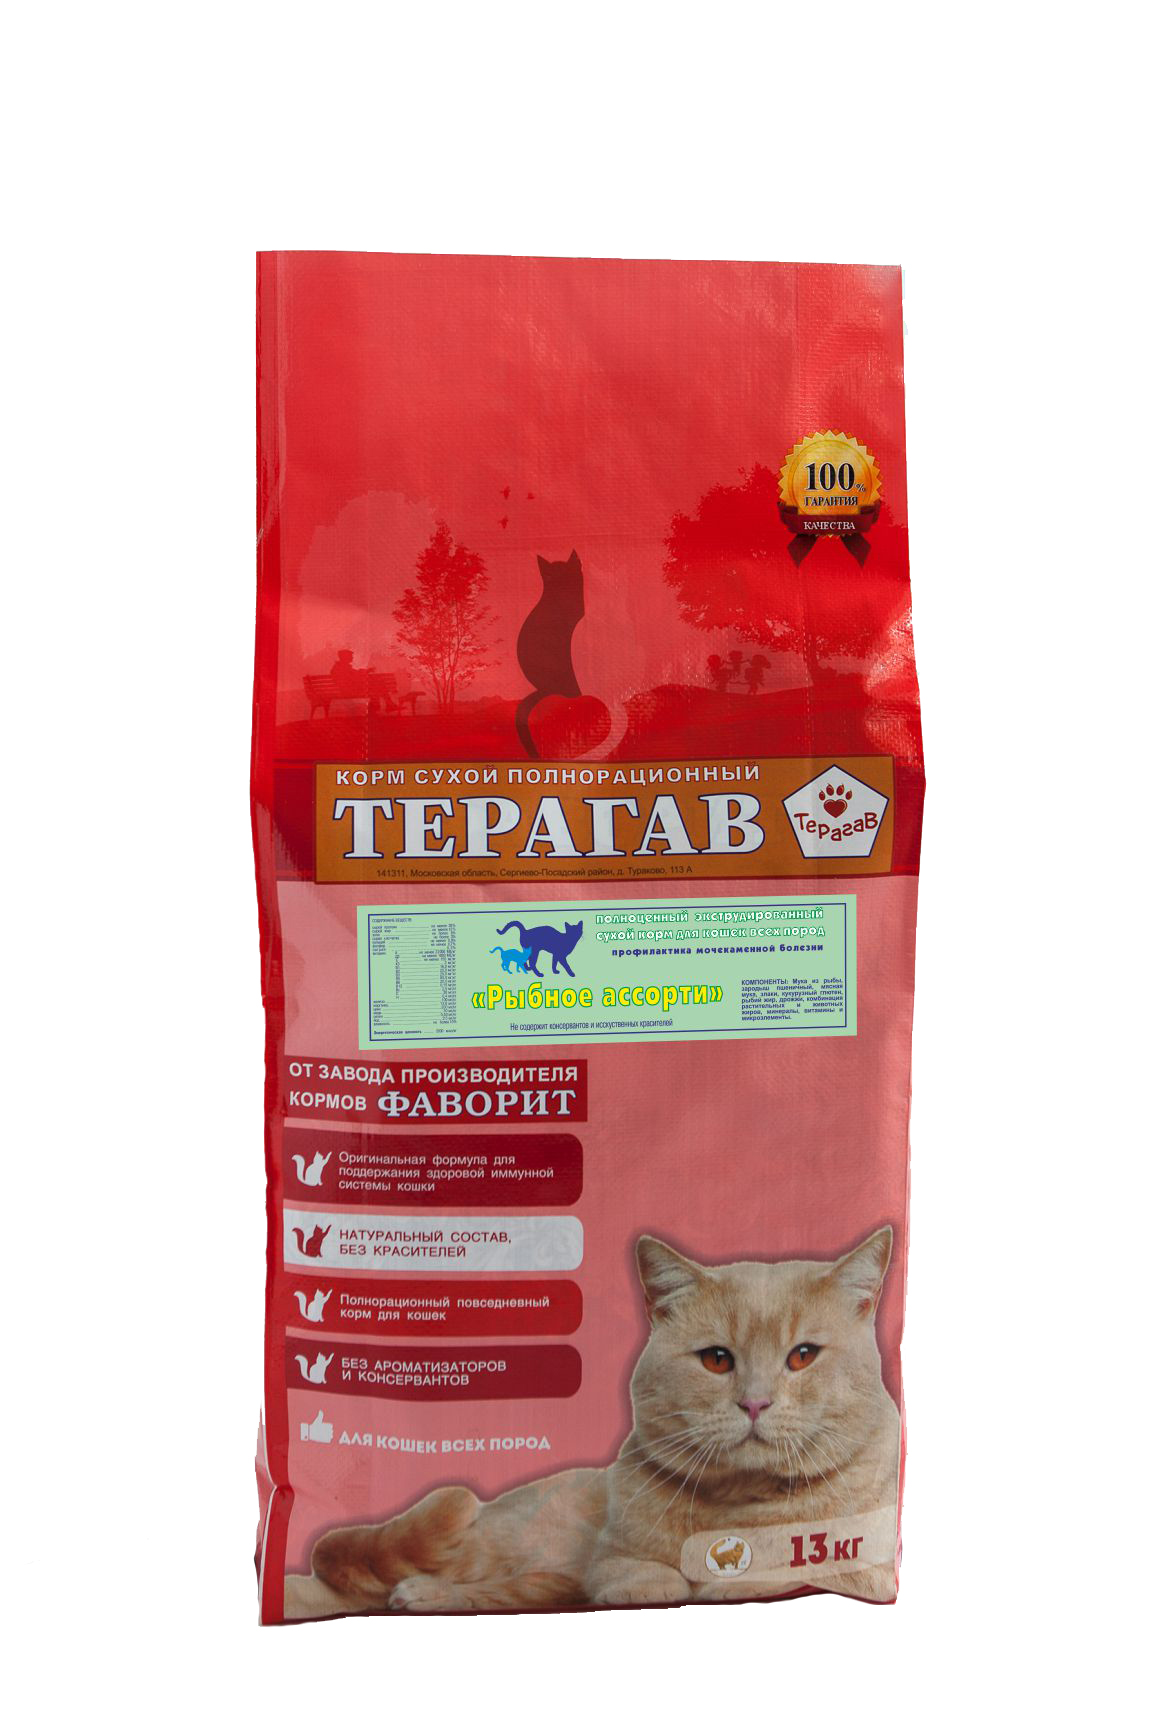 Сухой корм для кошек Терагав , рыба, мясо, 13кг